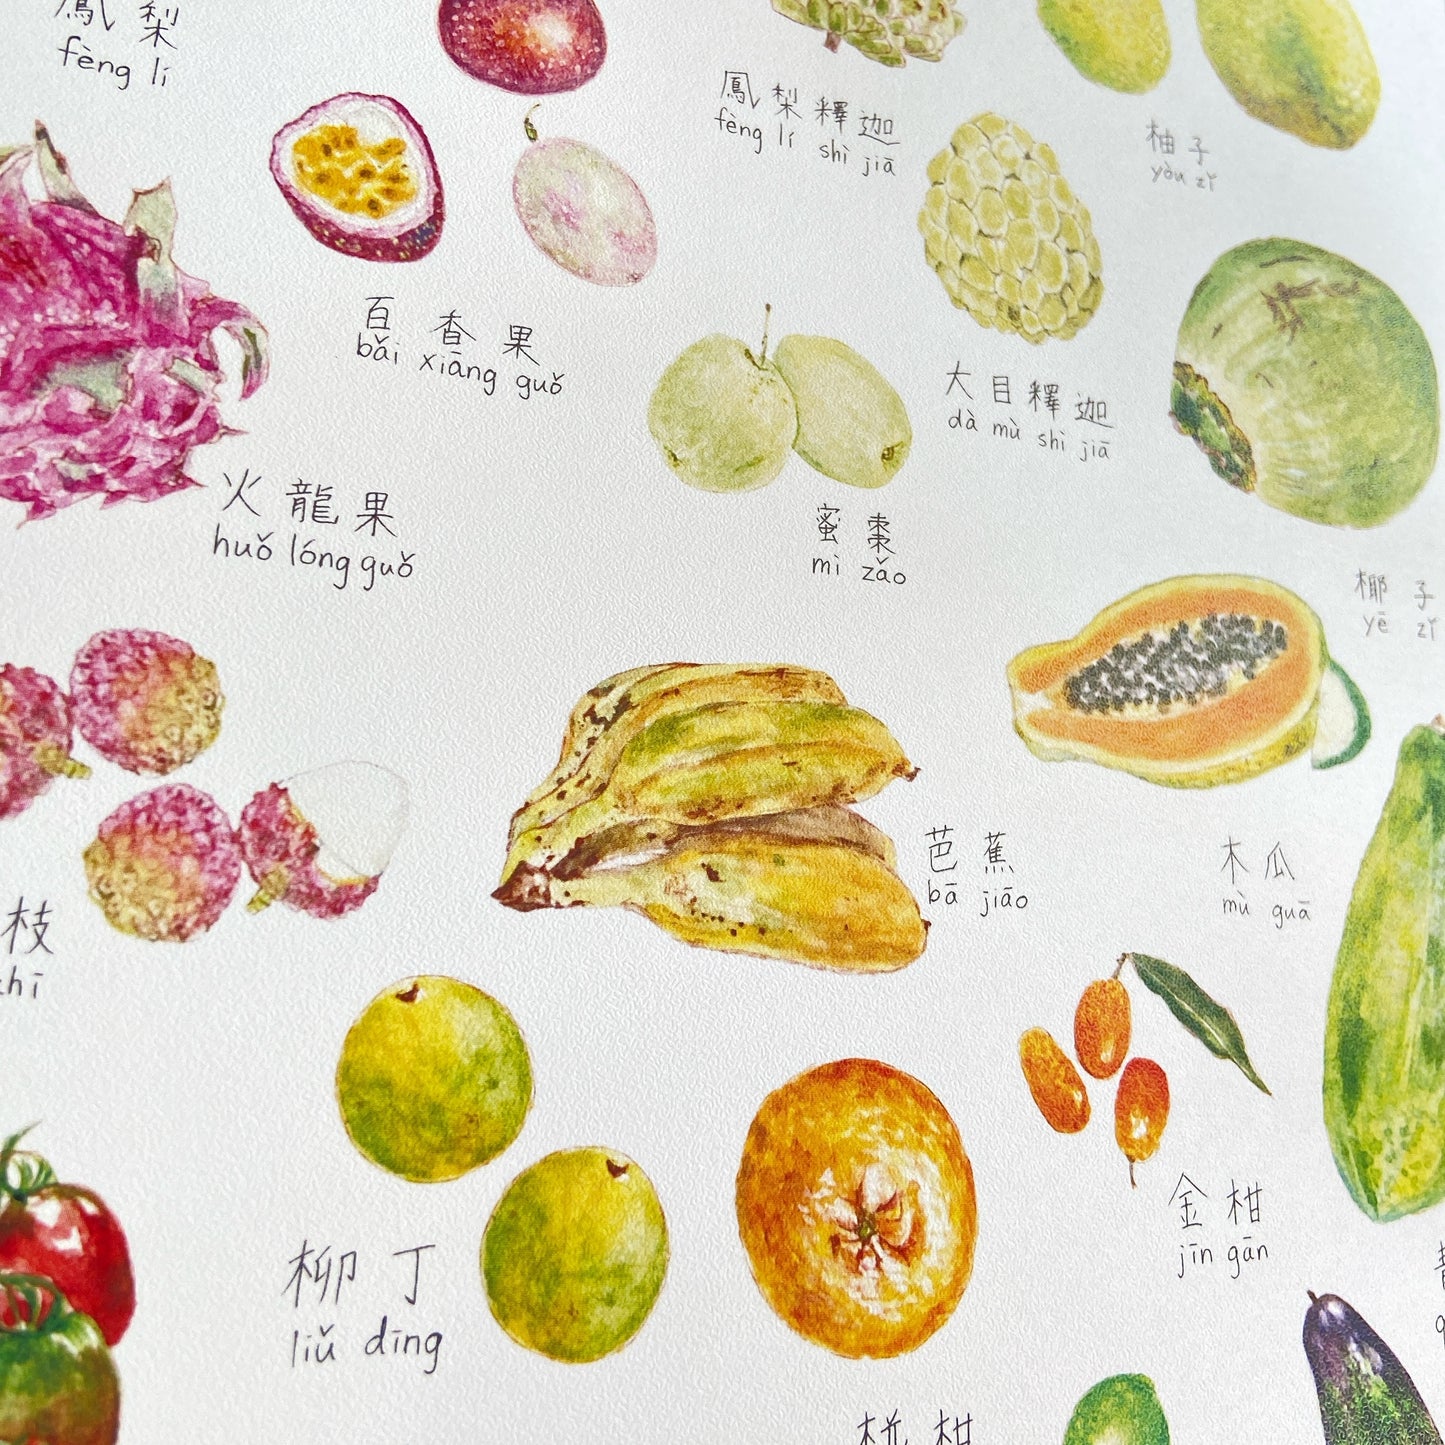 美術紙「台灣水果與蔬菜」A3尺寸（無框）